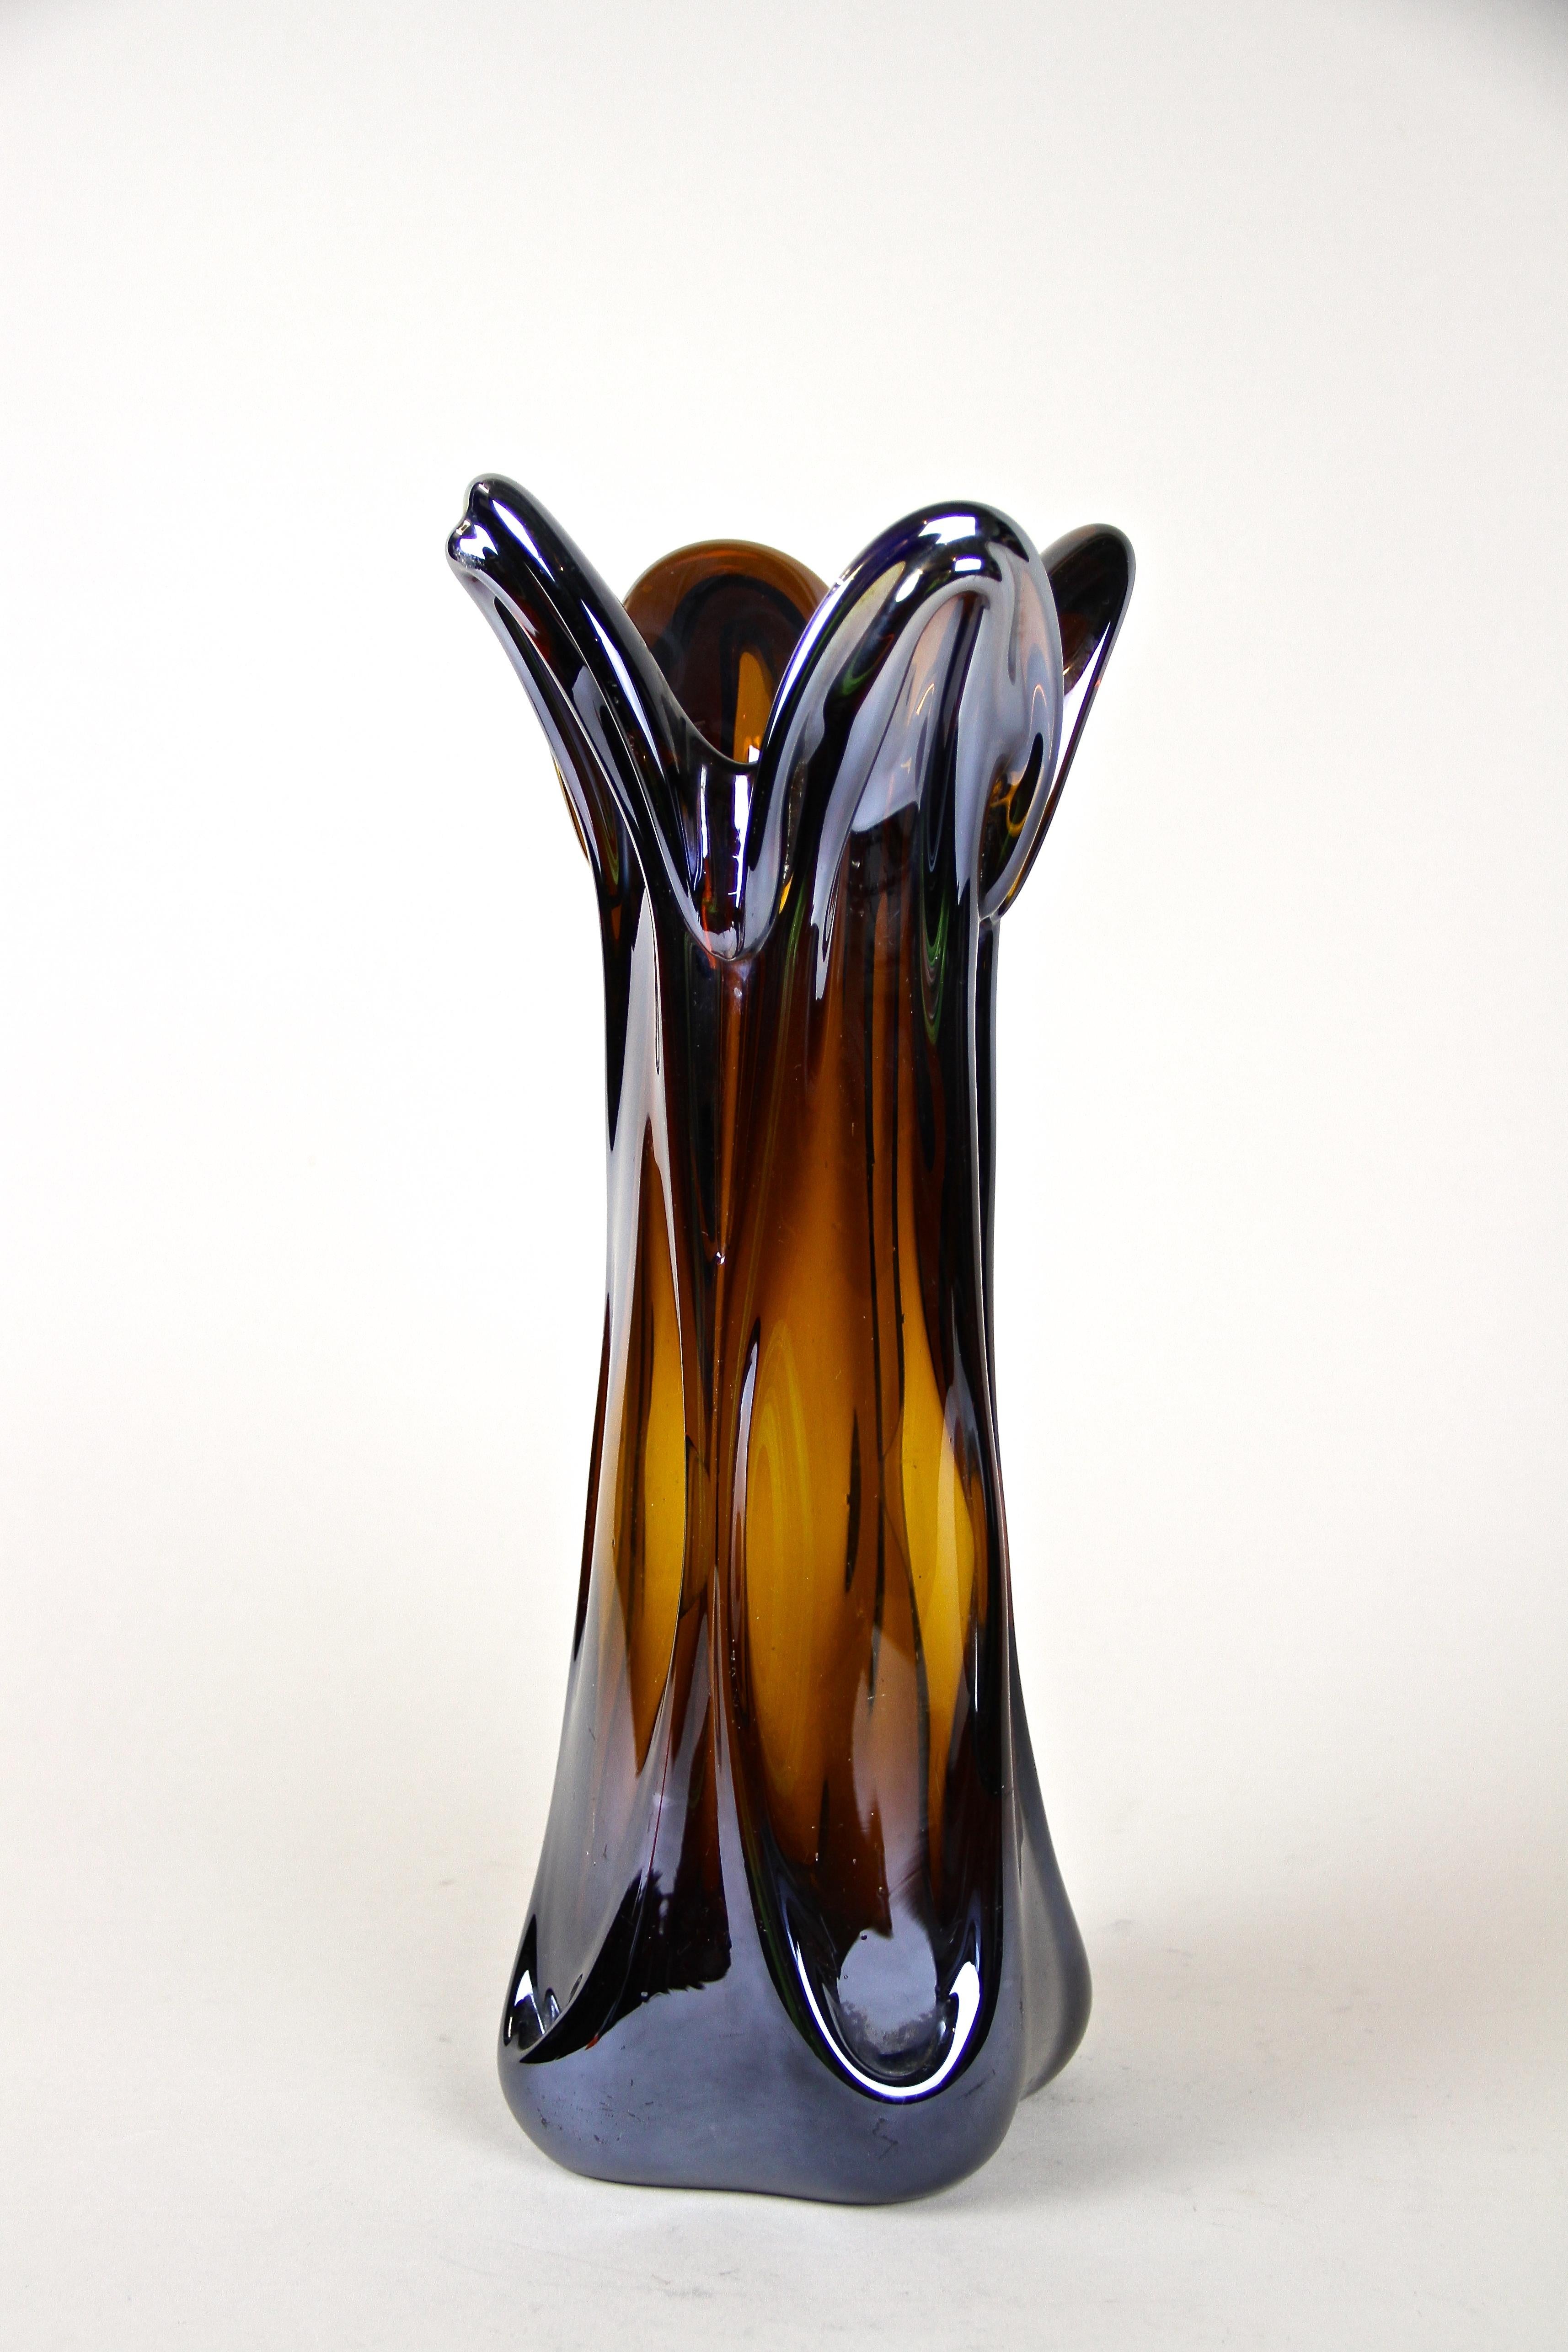 Extraordinaire vase en verre de Murano fabriqué à la main à la fin du XXe siècle, vers 1970, en Italie. Ce vase en verre d'aspect fantastique présente une forme inhabituelle, un corps de couleur ambrée avec un effet chromé exceptionnel. La surface